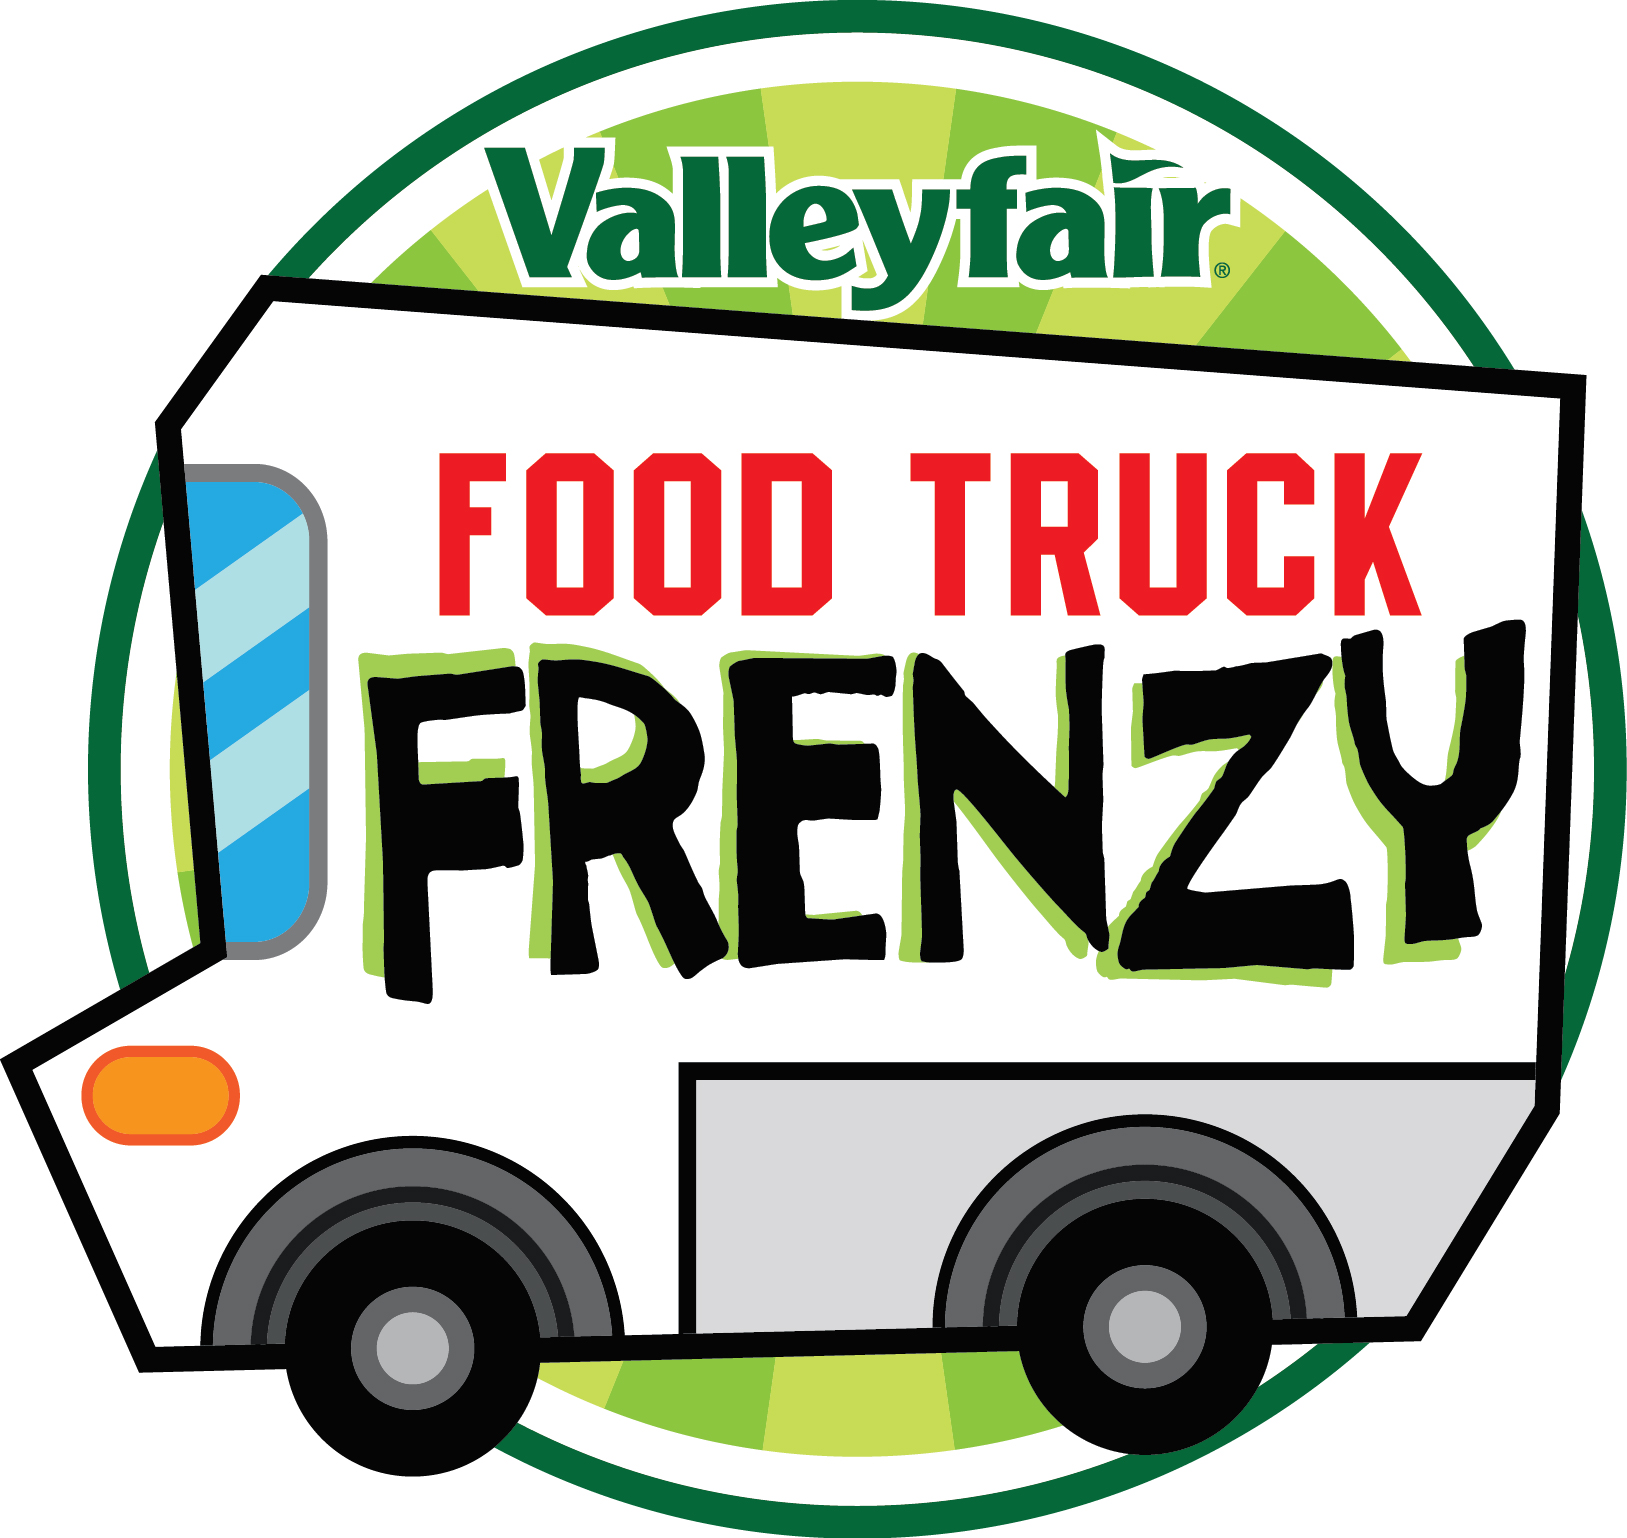 VF14-144 food truck frenzy logo